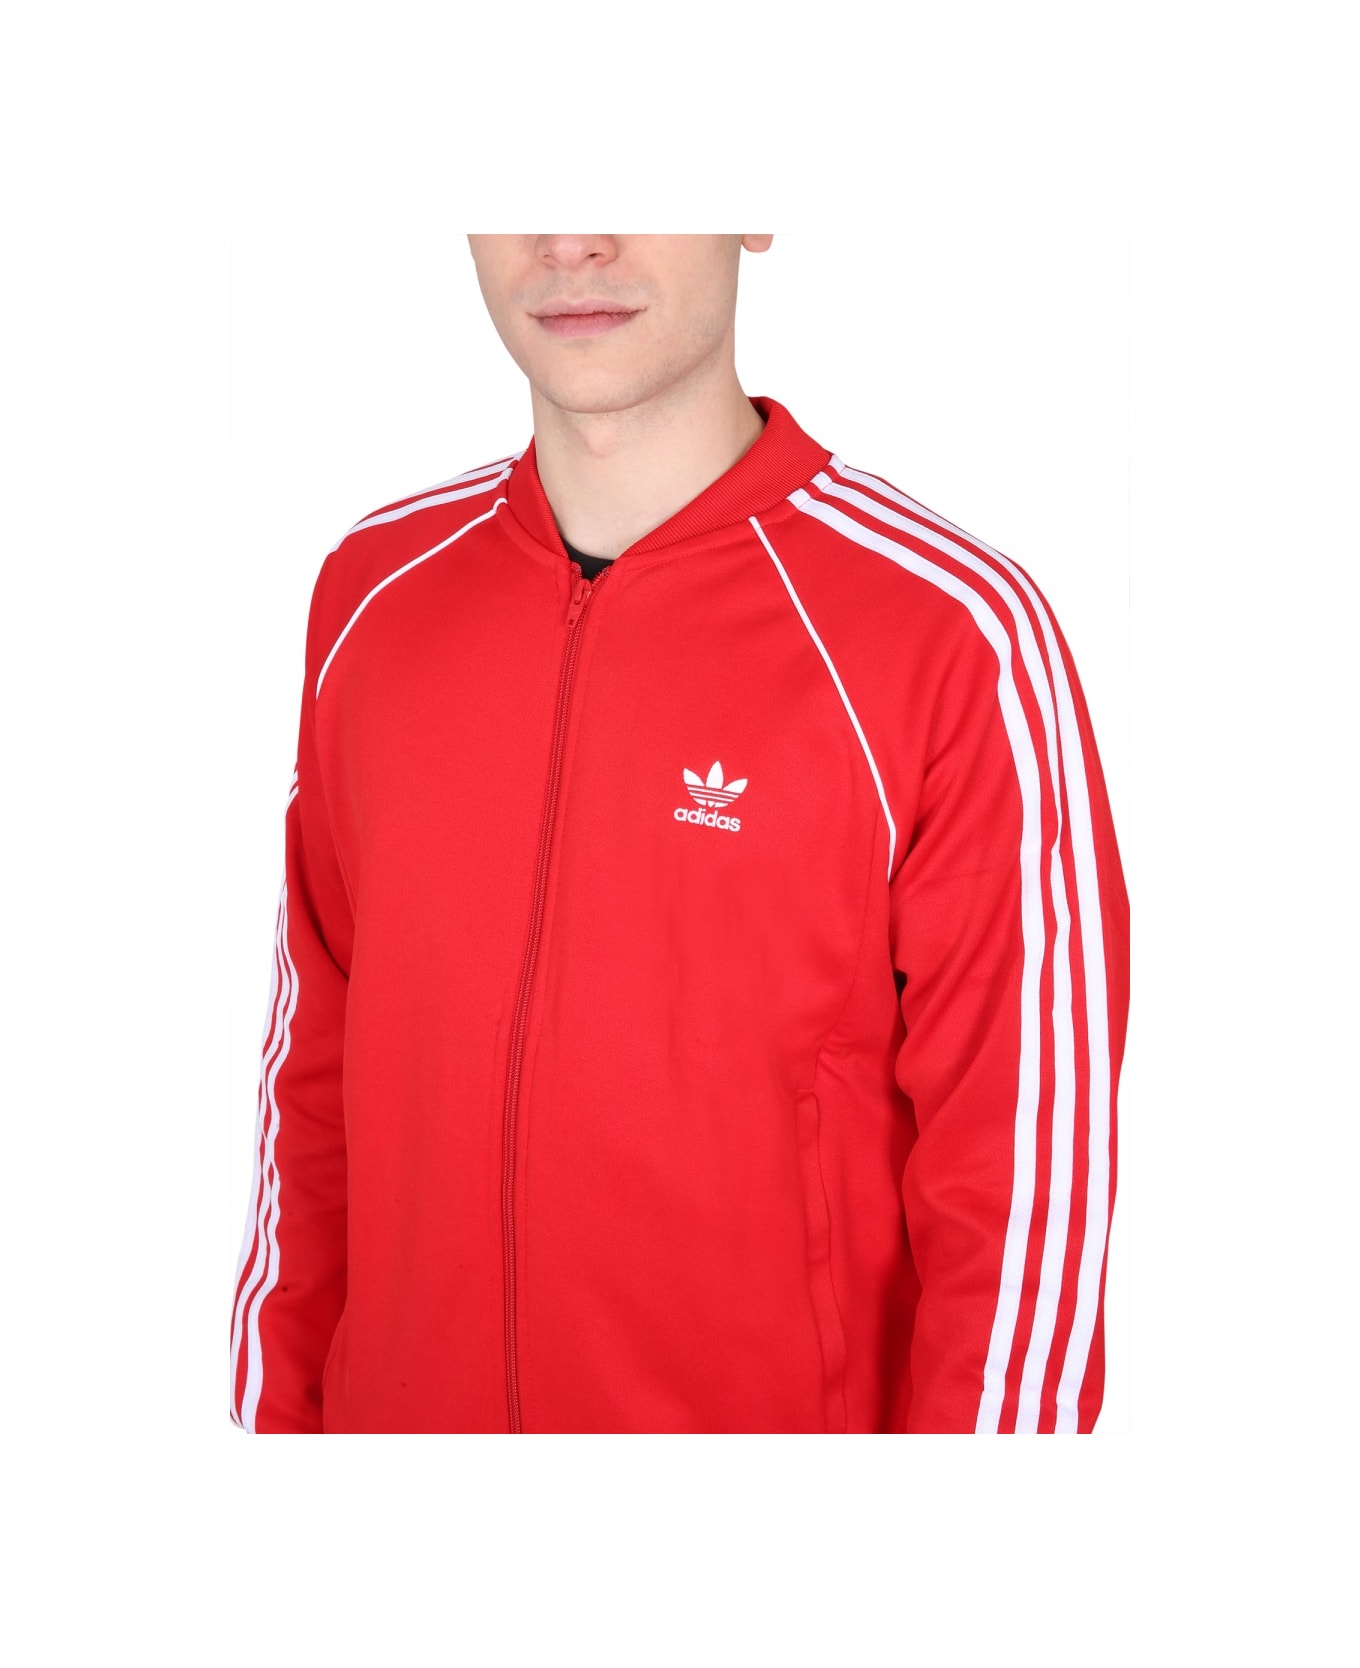 Adidas Originals Zip Sweatshirt - RED